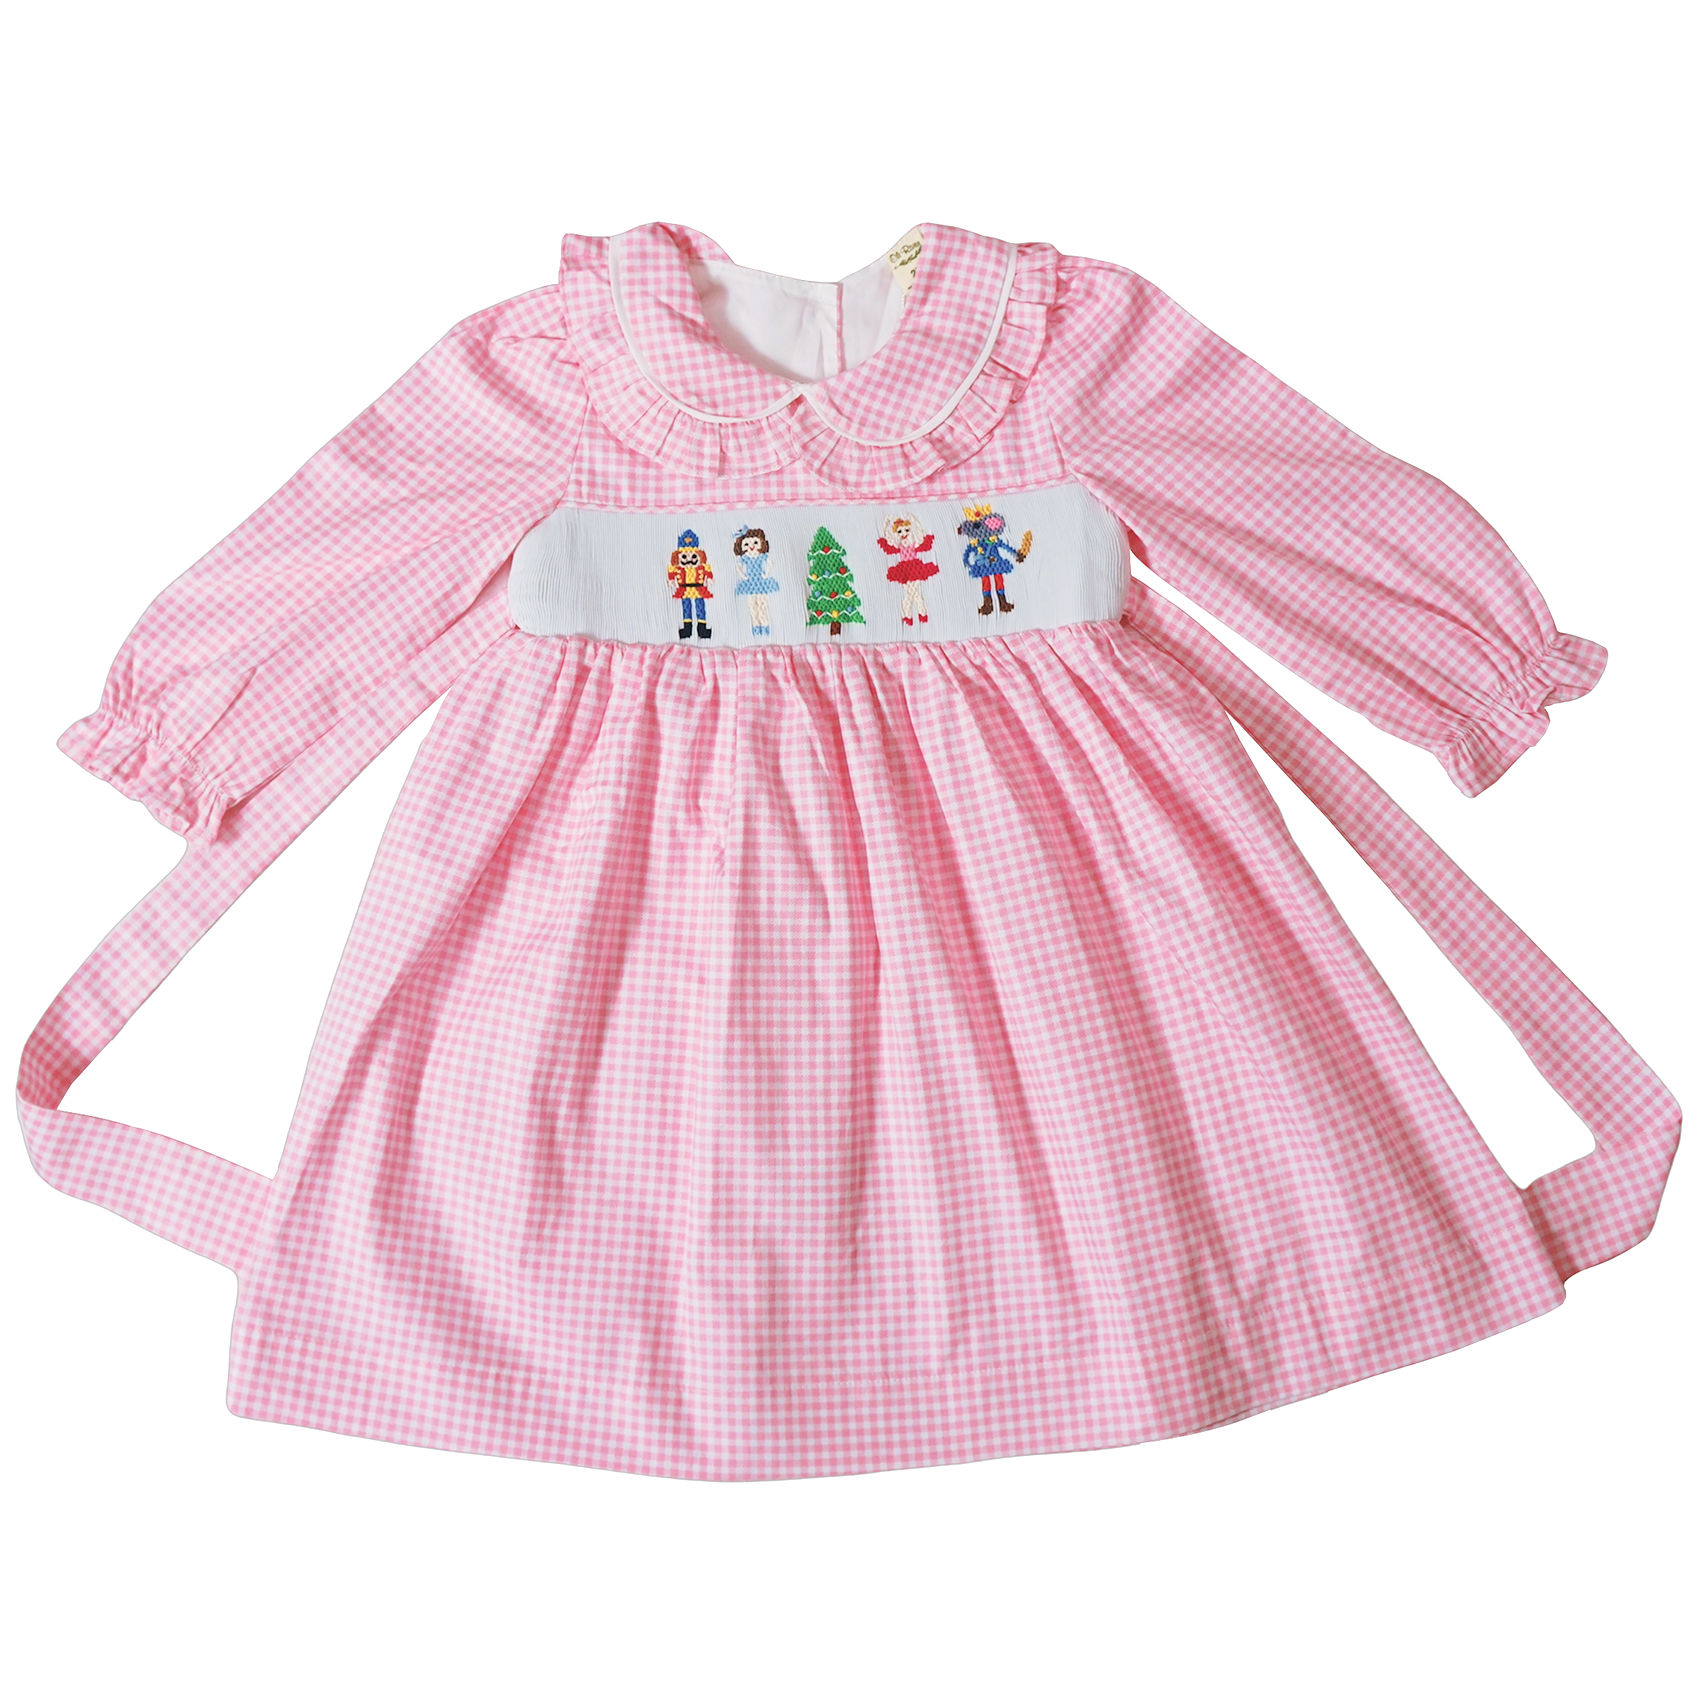 Baby Toddler Little Girls Merry Christmas Nutcracker Ballet Hand Smocked Dress - Pink Gingham - Angeline Kids